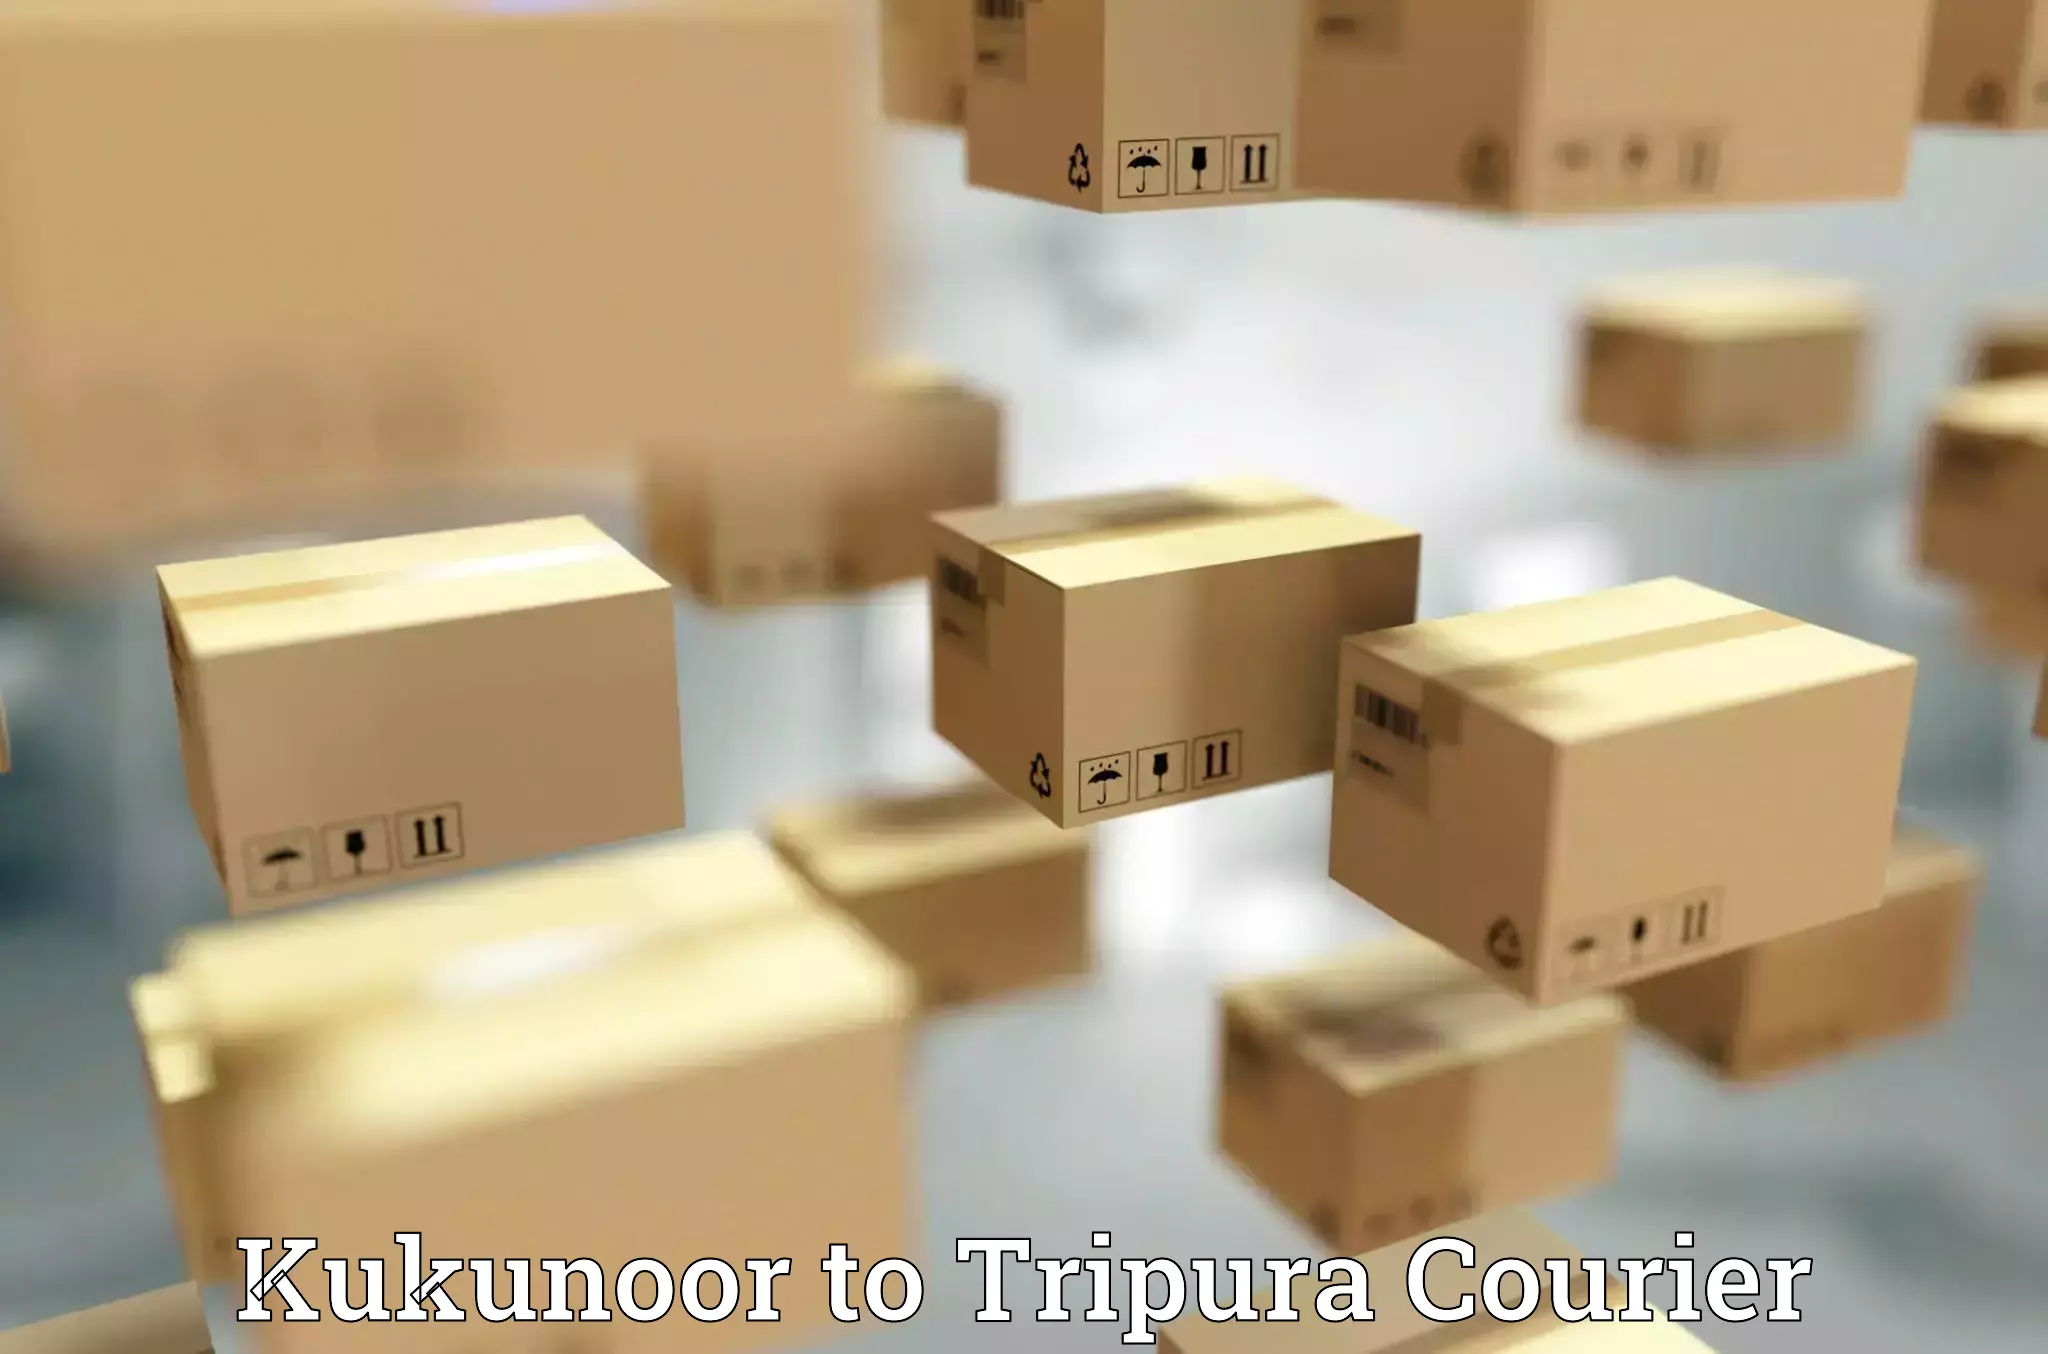 Express logistics providers Kukunoor to Amarpur